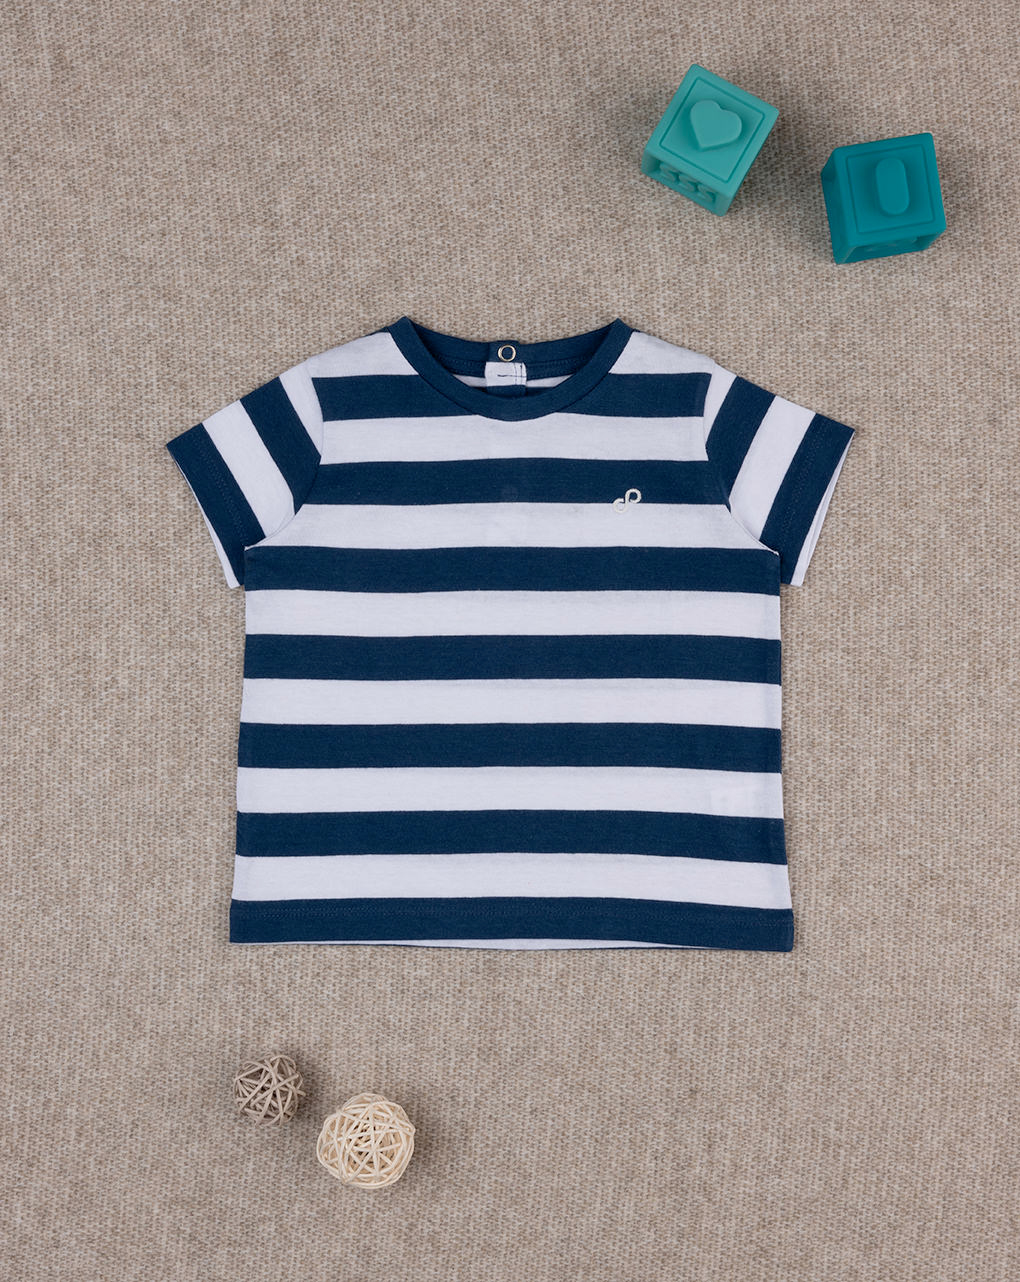 βρεφικό t-shirt basic ριγέ μπλε/λευκό "άπειρο" για αγόρι - Prénatal